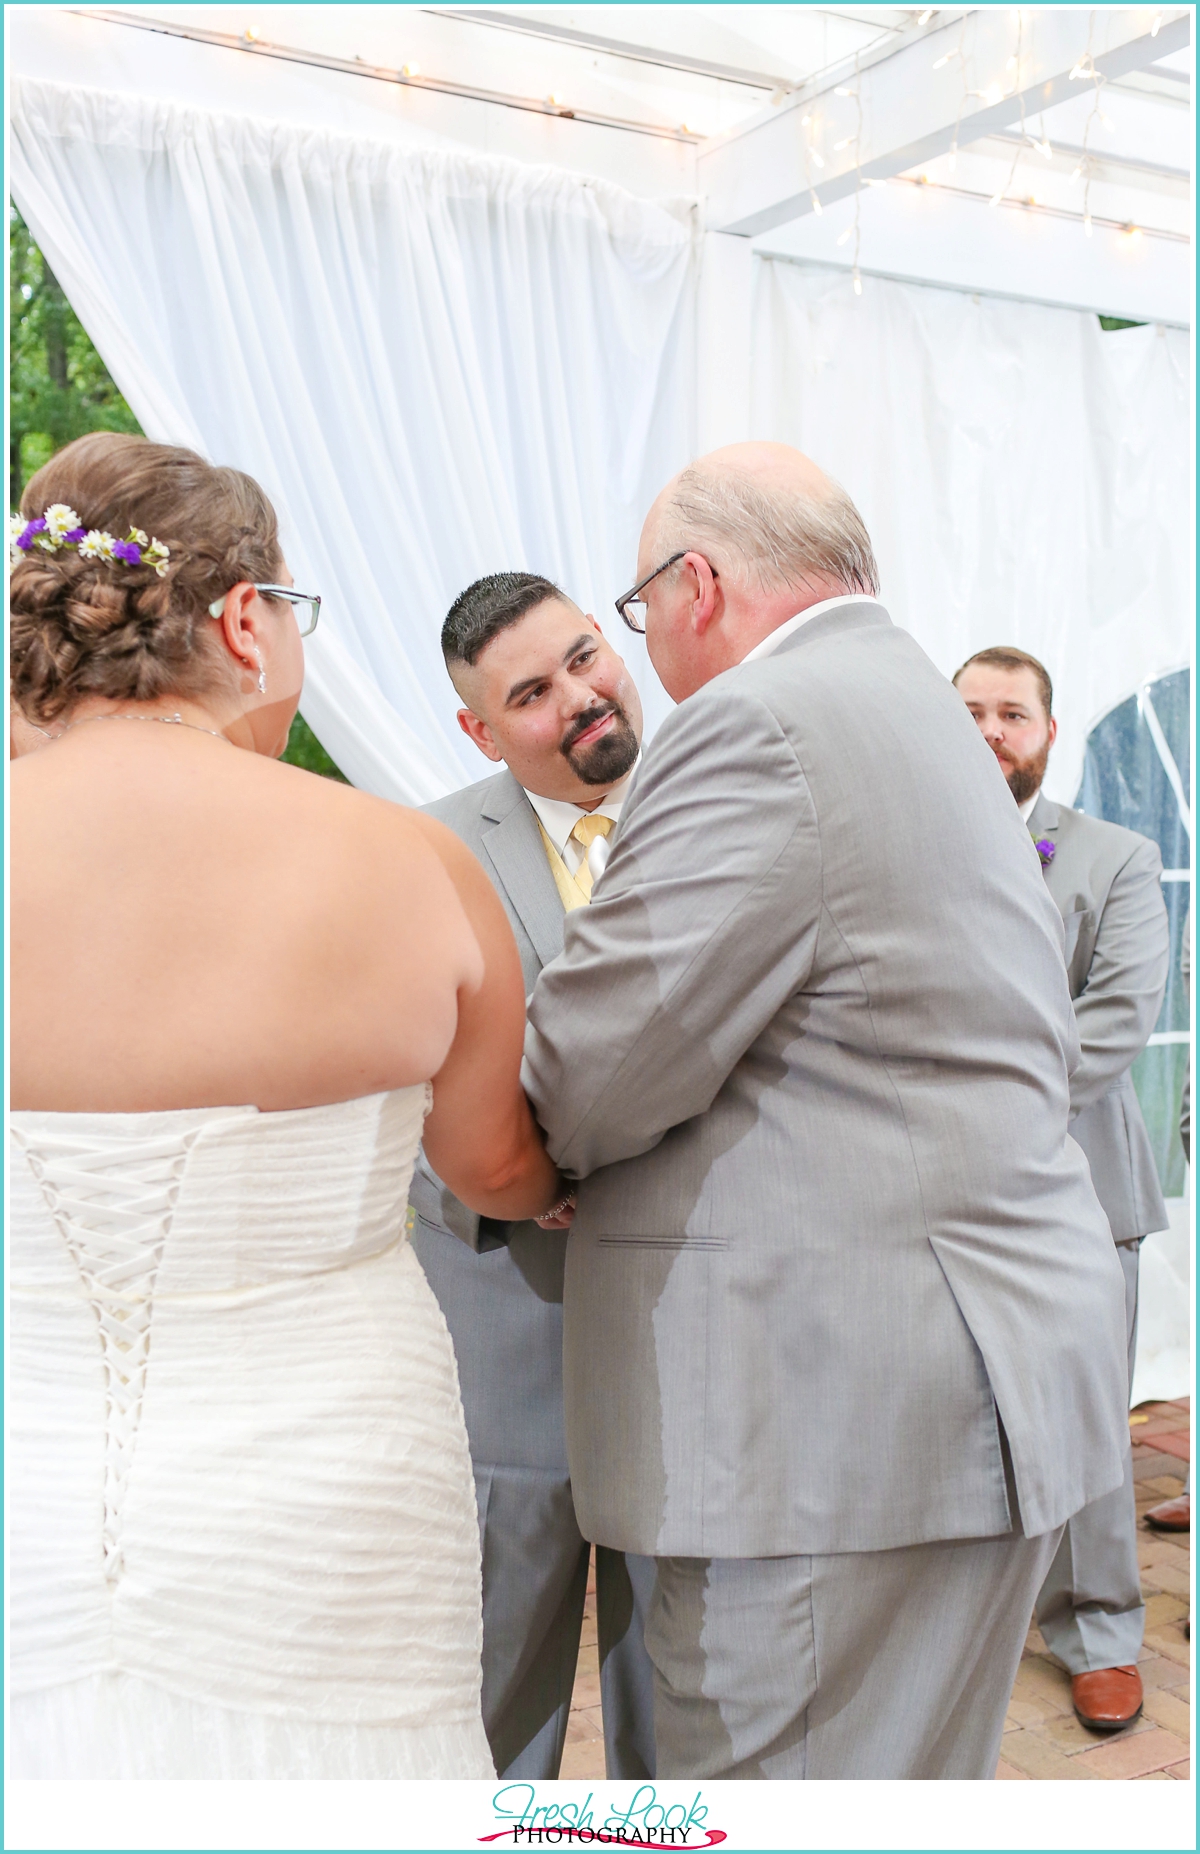 handing the bride to her groom